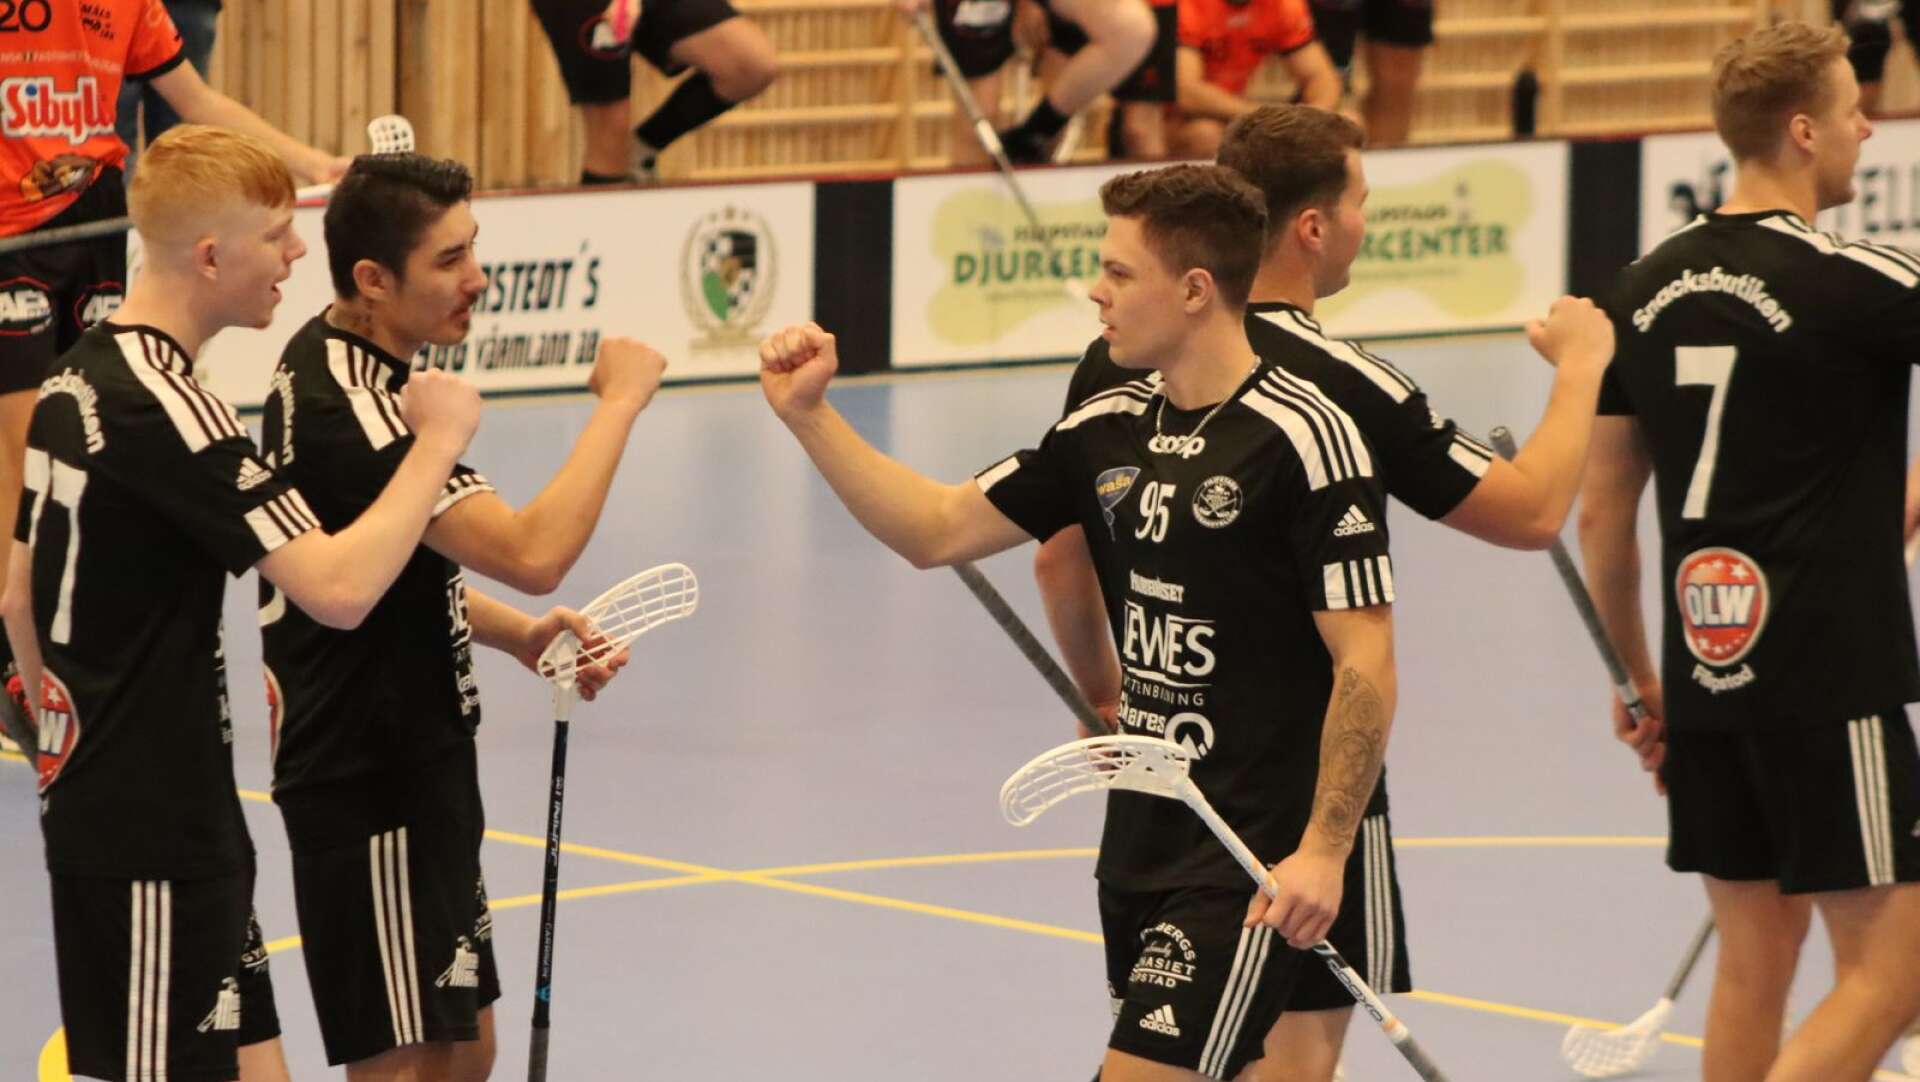 Jacob Karlsson, till höger, firar ett av målen tillsammans med Zackarias Lindgren och Isak Hultgren, längst till vänster. 